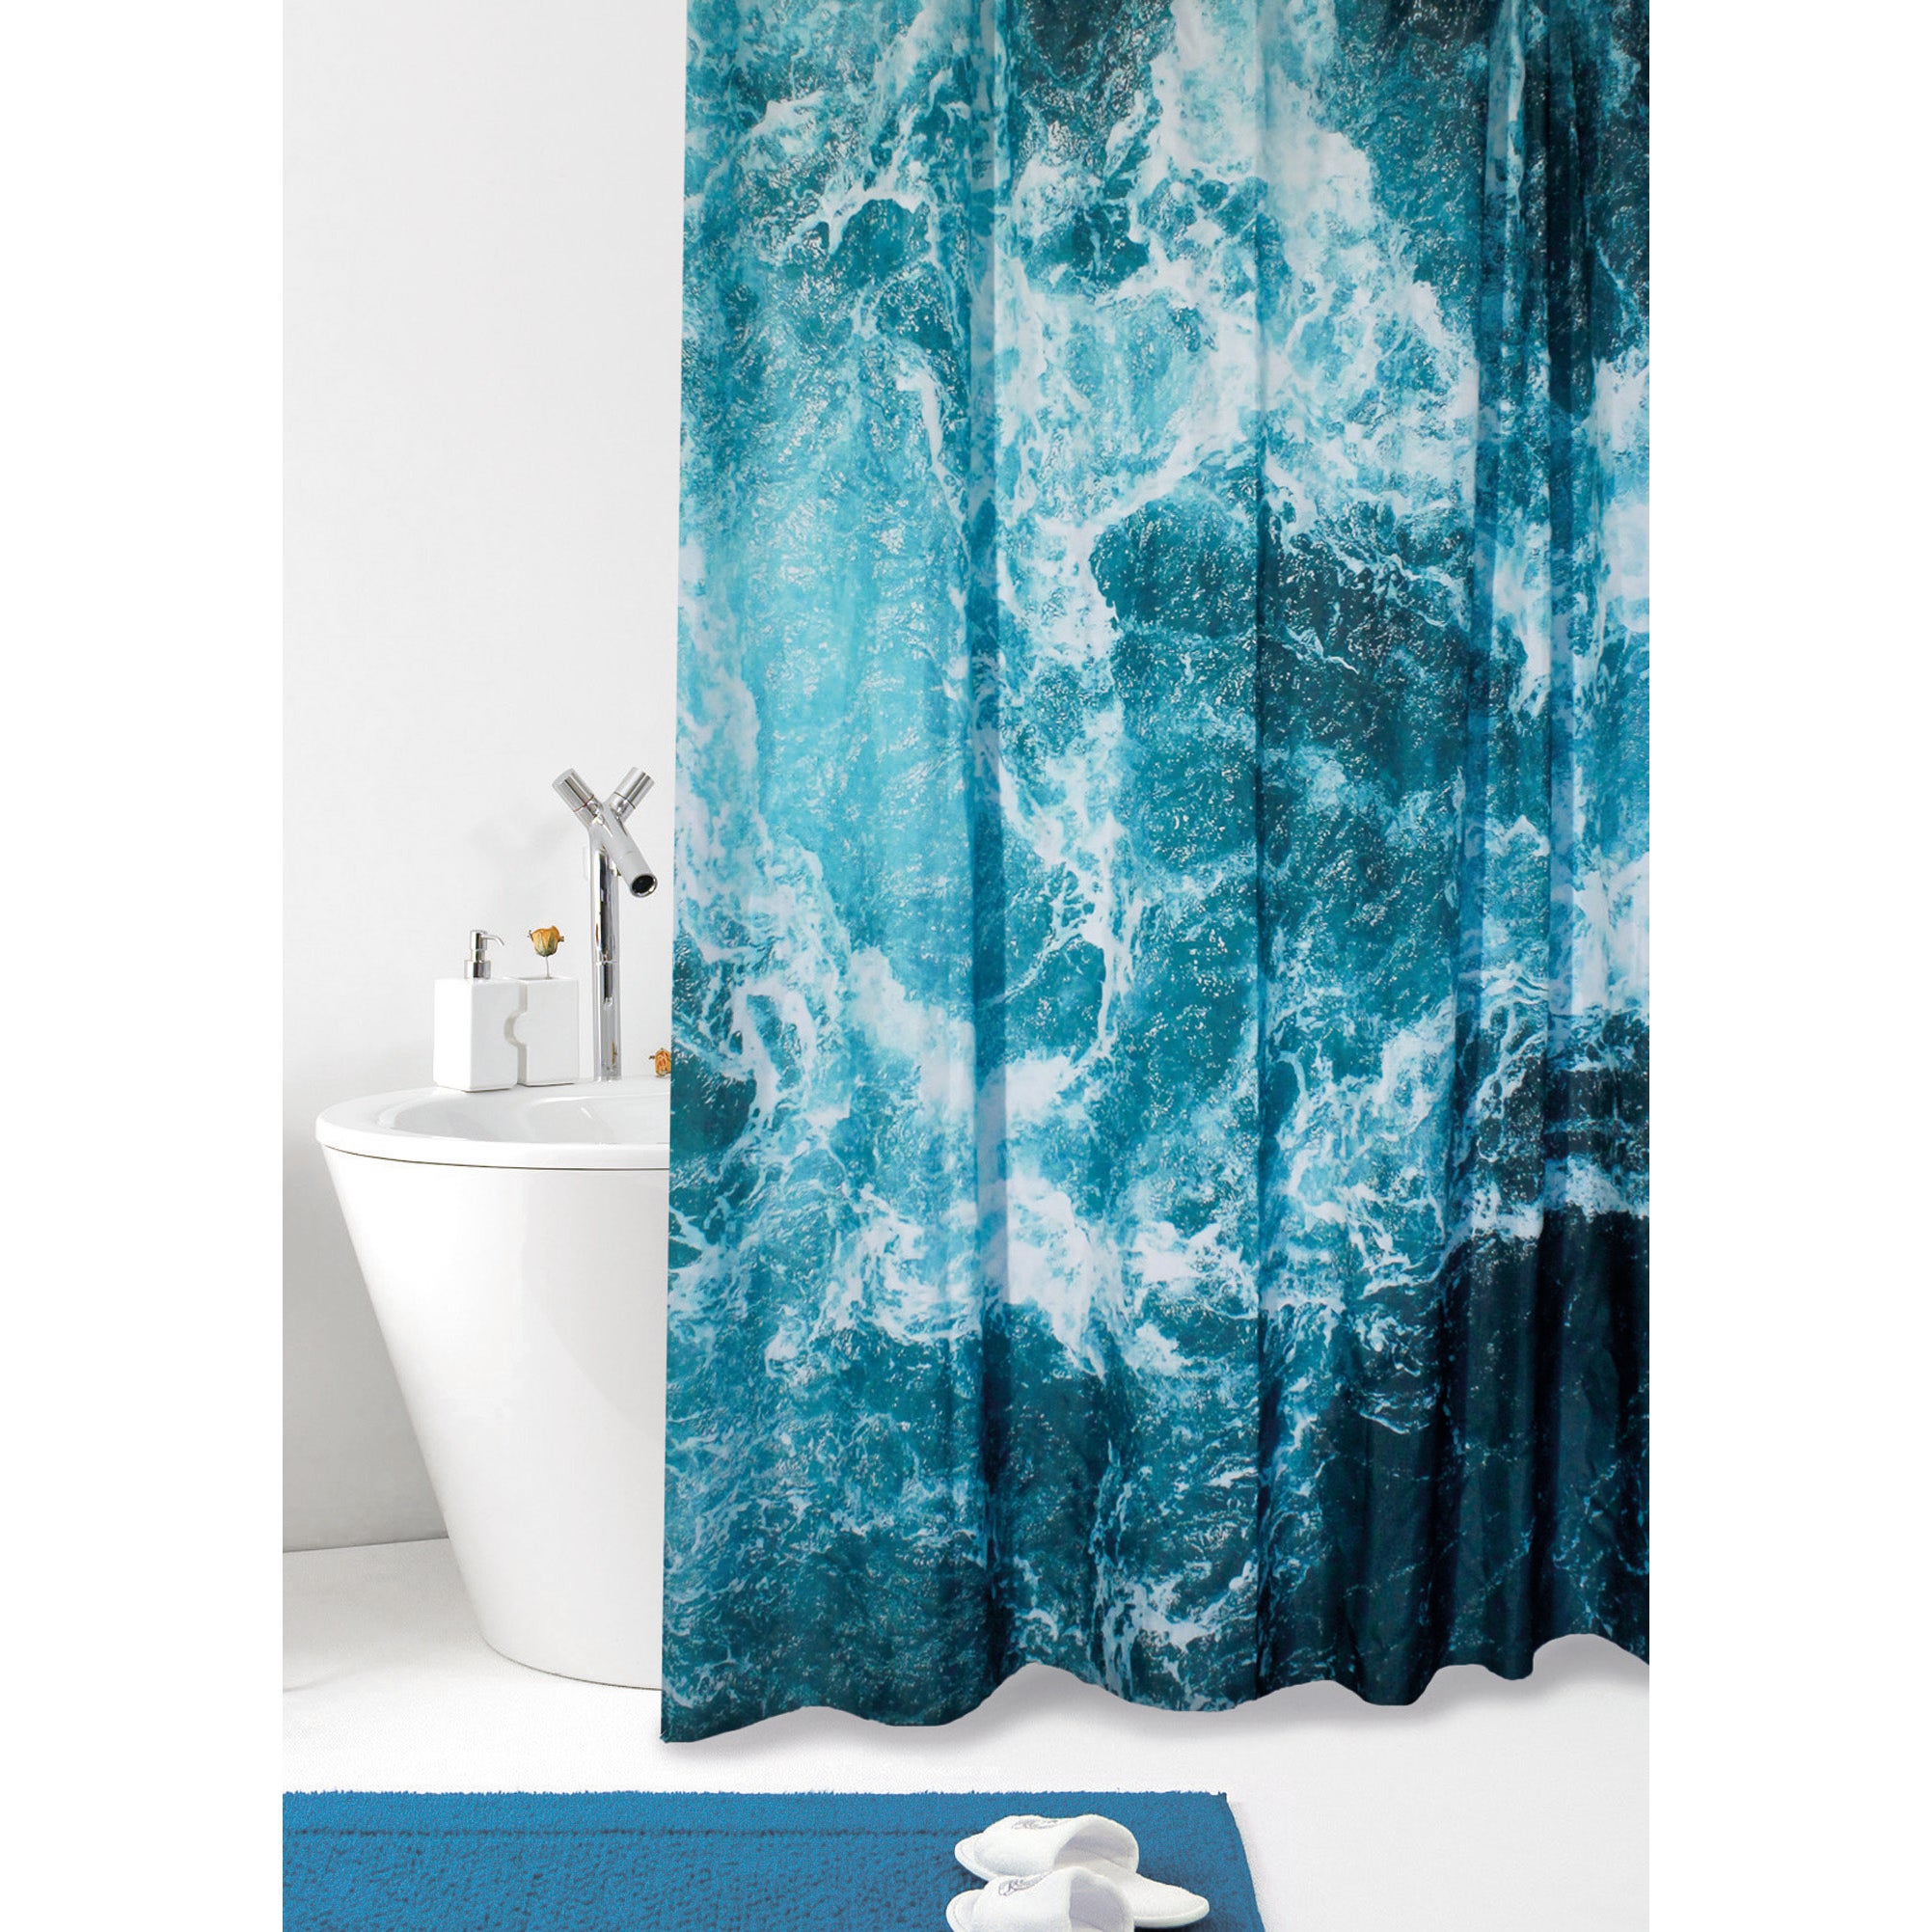 ABAKUHAUS Nautico Tenda da Doccia Blu Bianco 175 cm x 220 cm per la Vasca da Bagno Marine Starfish Tessuto Set di Decorazioni per Il Bagno con Ganci